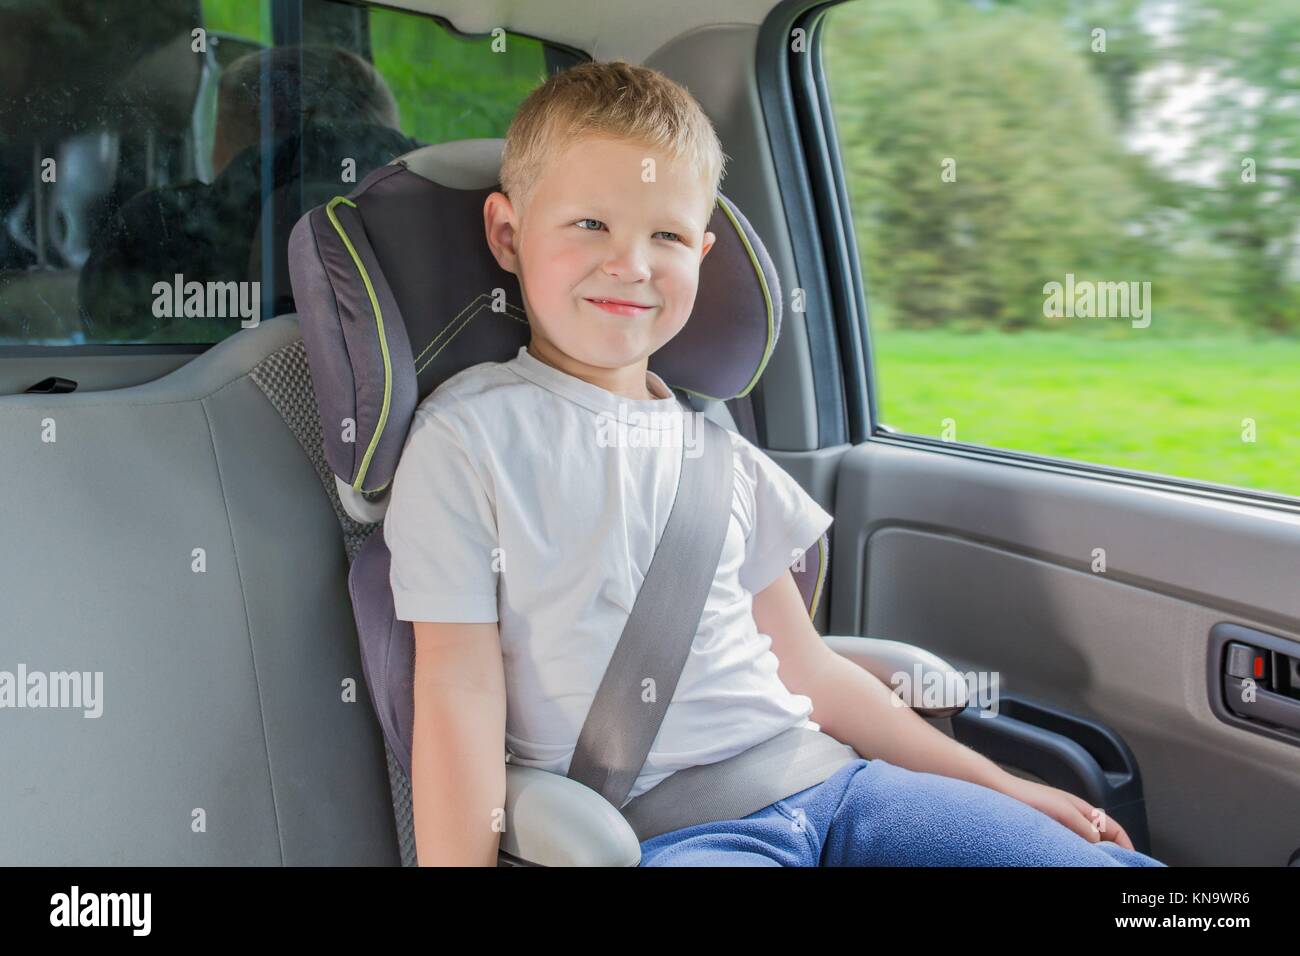 Ребенок без ремня безопасности. Мальчик в кресле. Мальчик в автокресле. Ребенок сидит в машине. Малыш мальчик пристегнутый в кресле автомобиля.